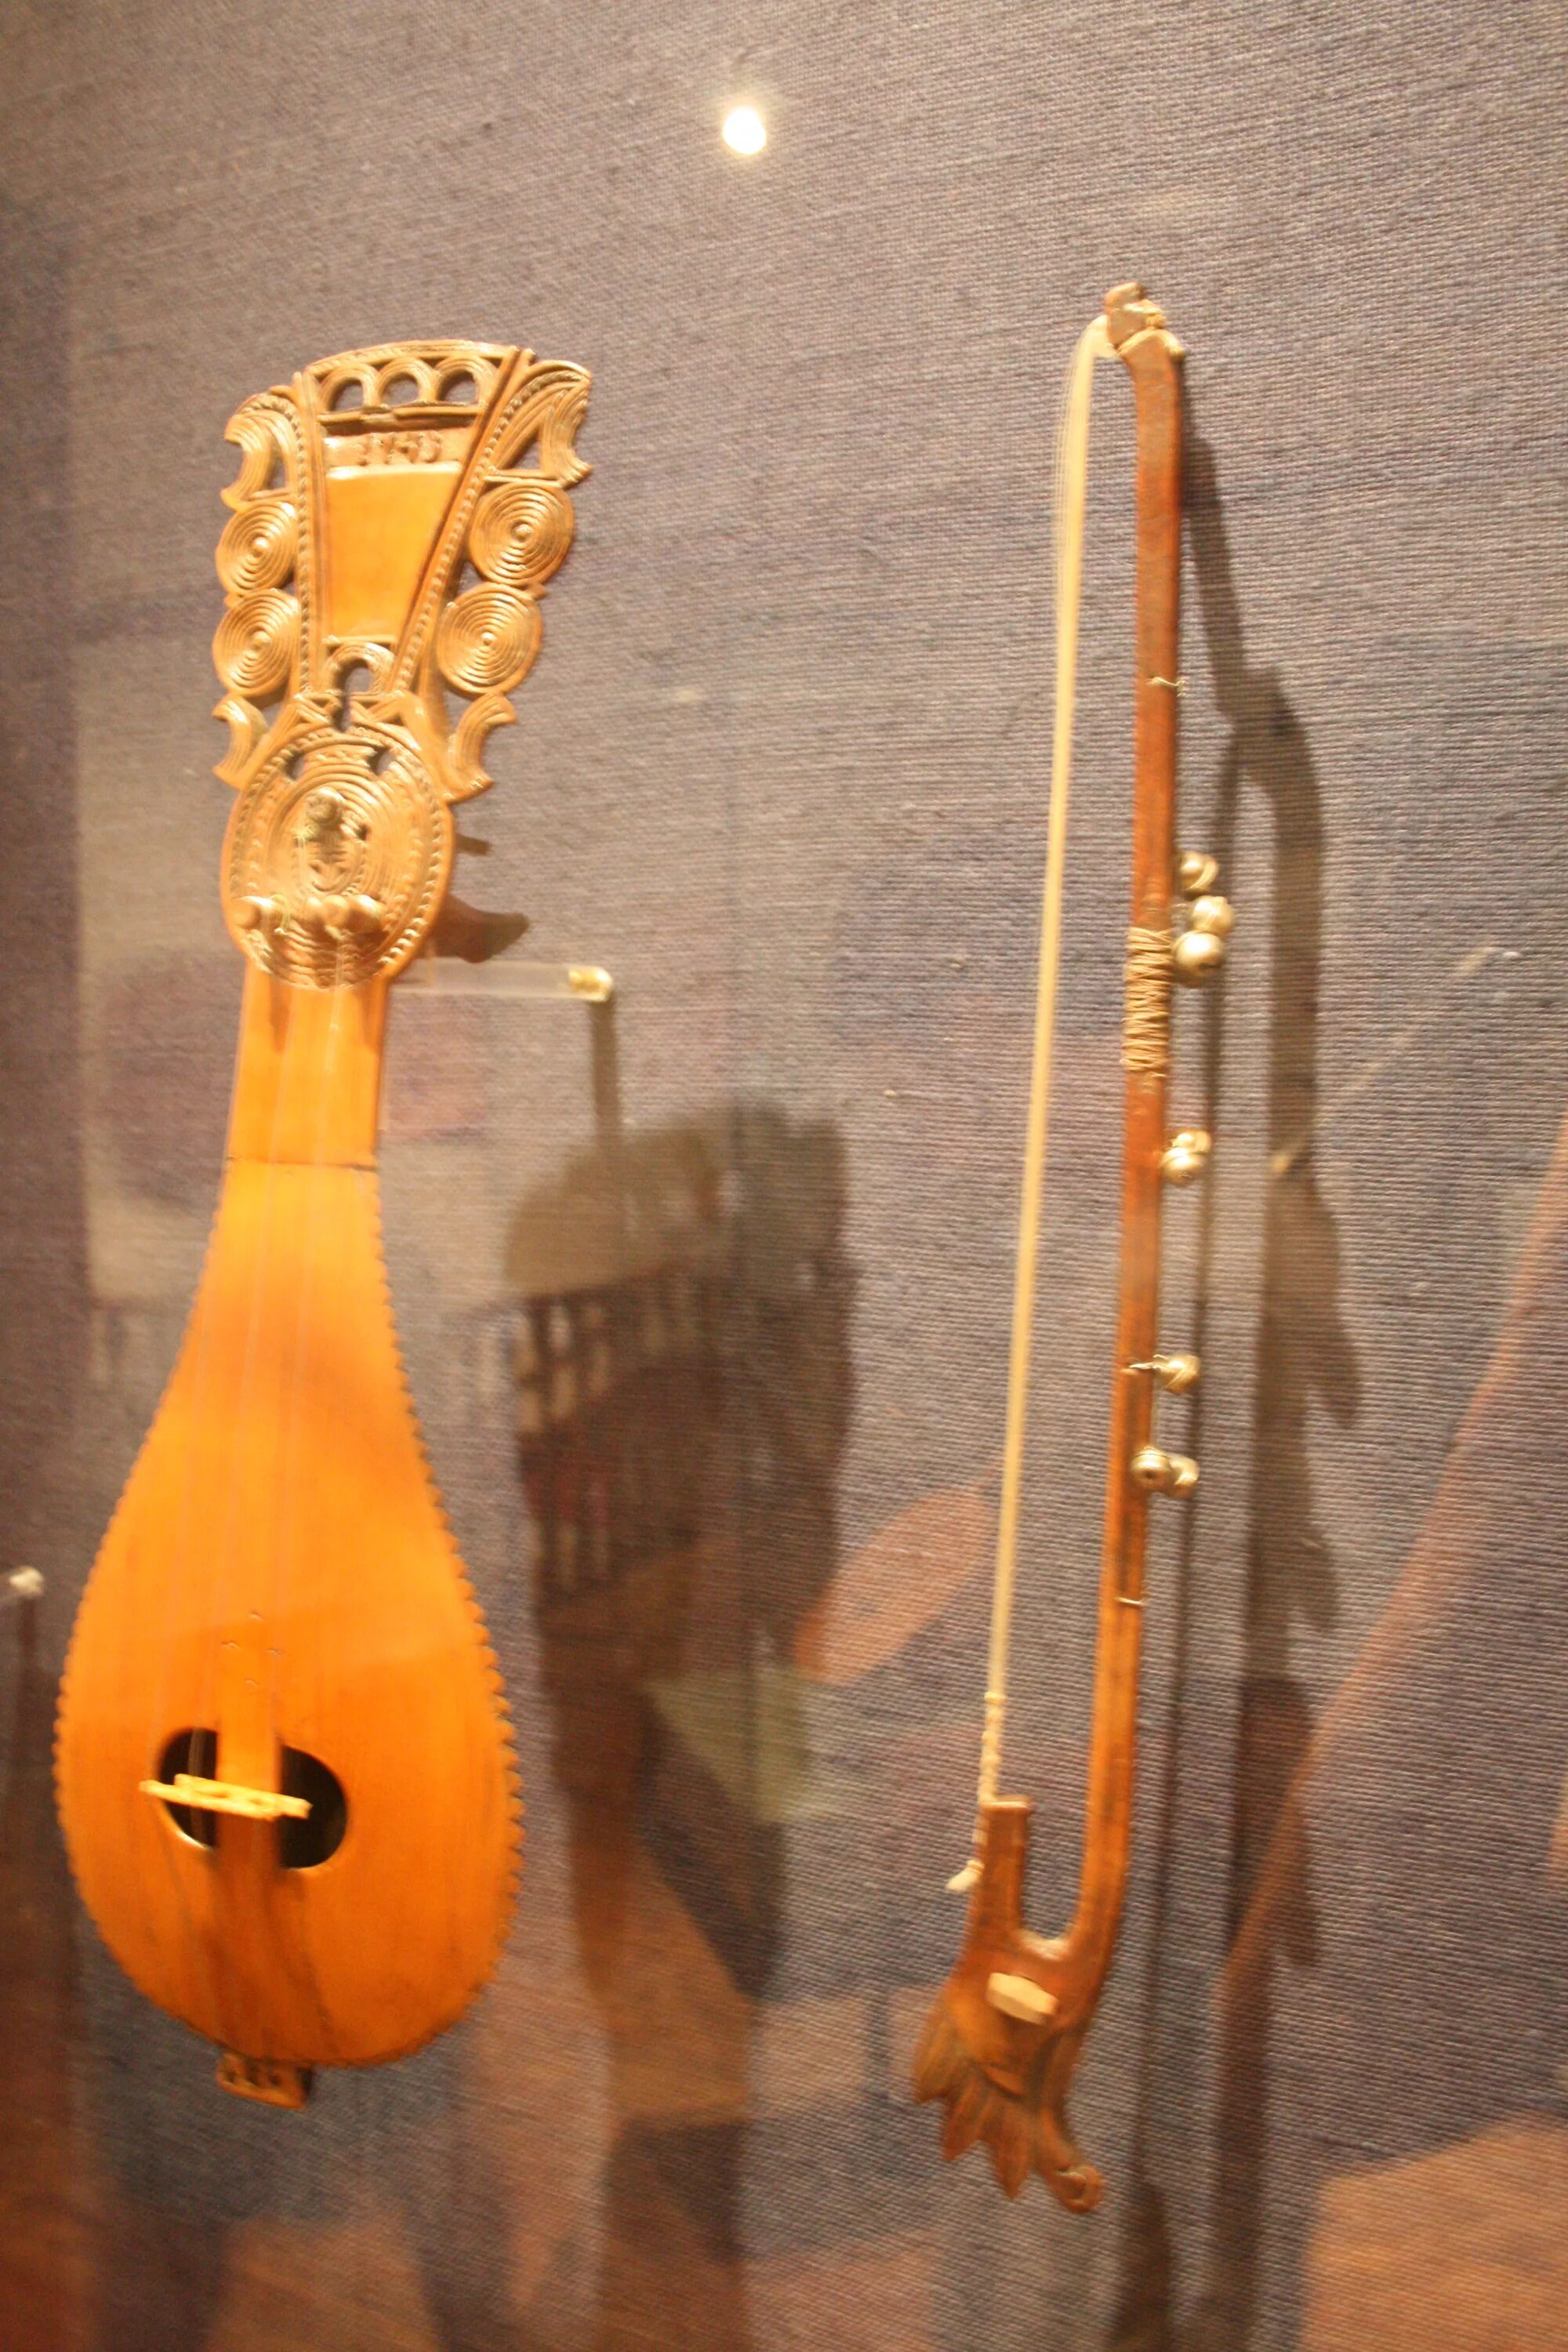 Немецкий струнный инструмент похожий